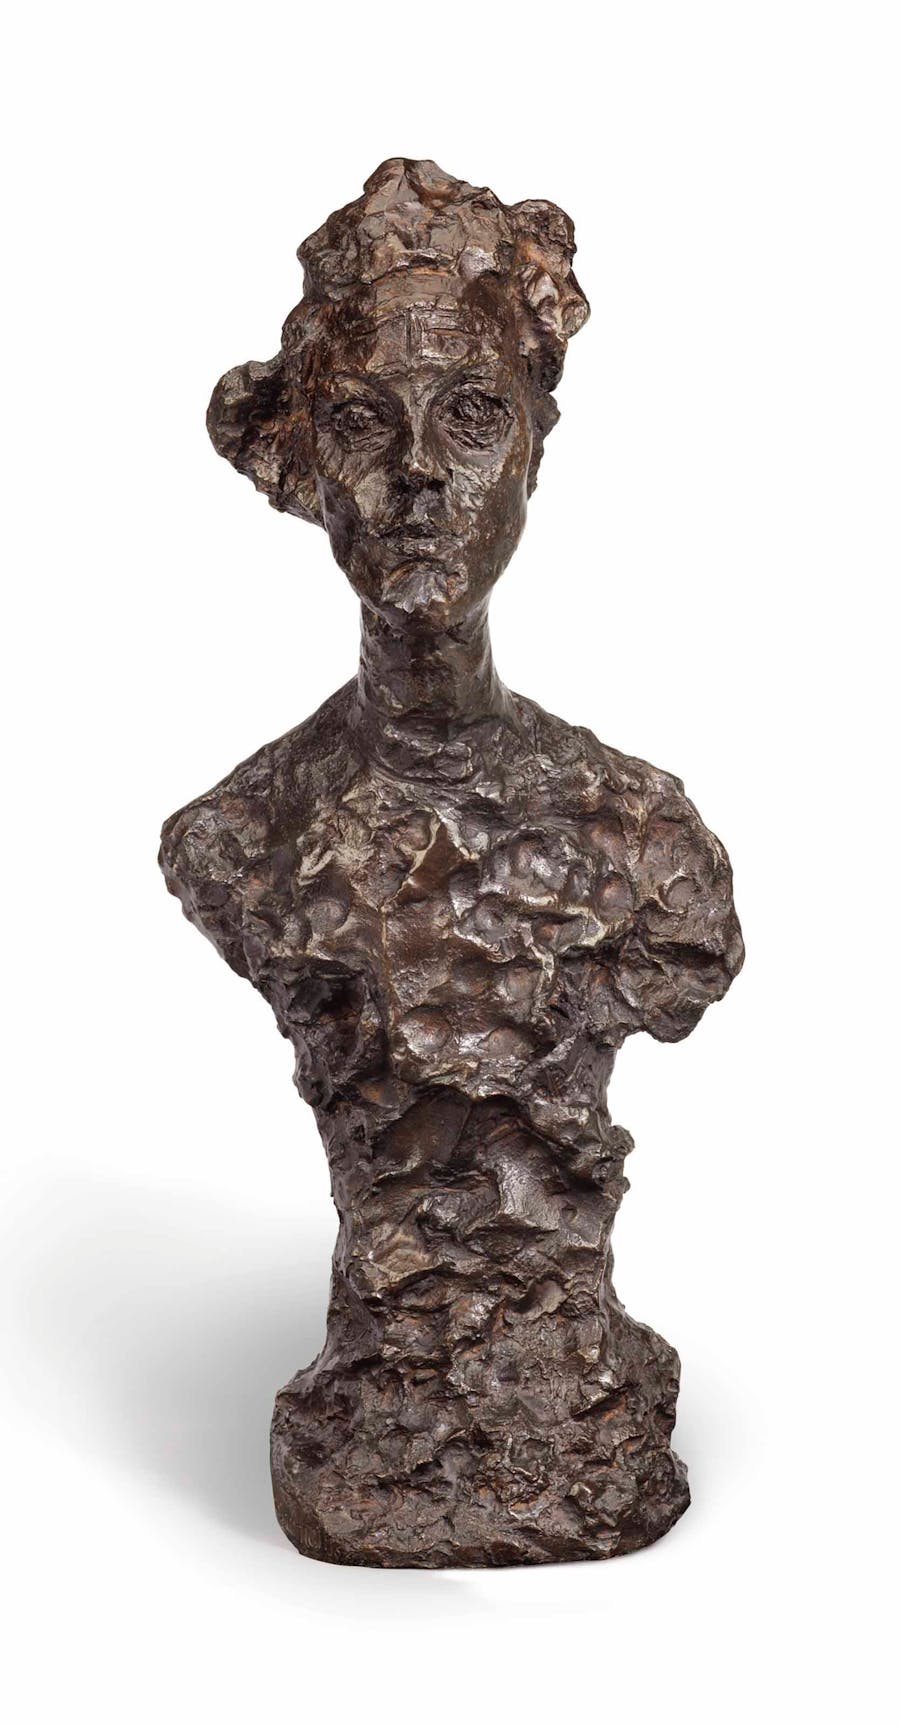 Alberto Giacometti (1901-1966), Buste d'Annette VI, 1964, bronze with patina, 59.5 cm. Image via Christie’s.